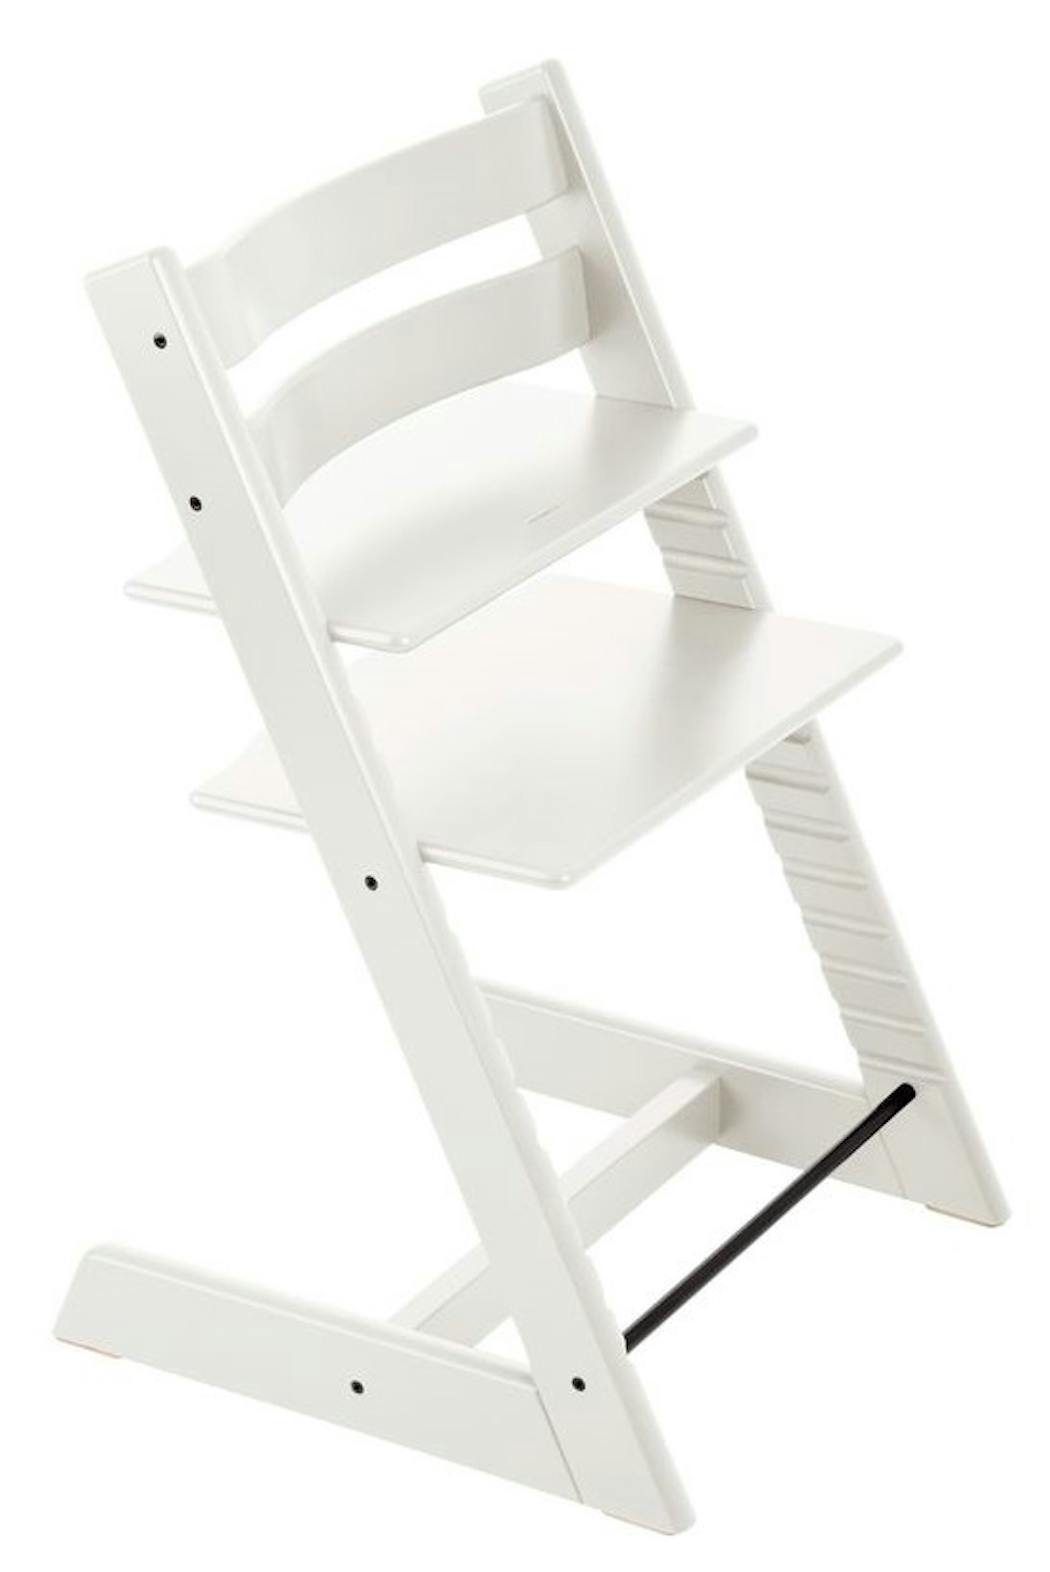 Chaise Tripp Trapp : la chaise haute utilisable à vie - Blog bébé